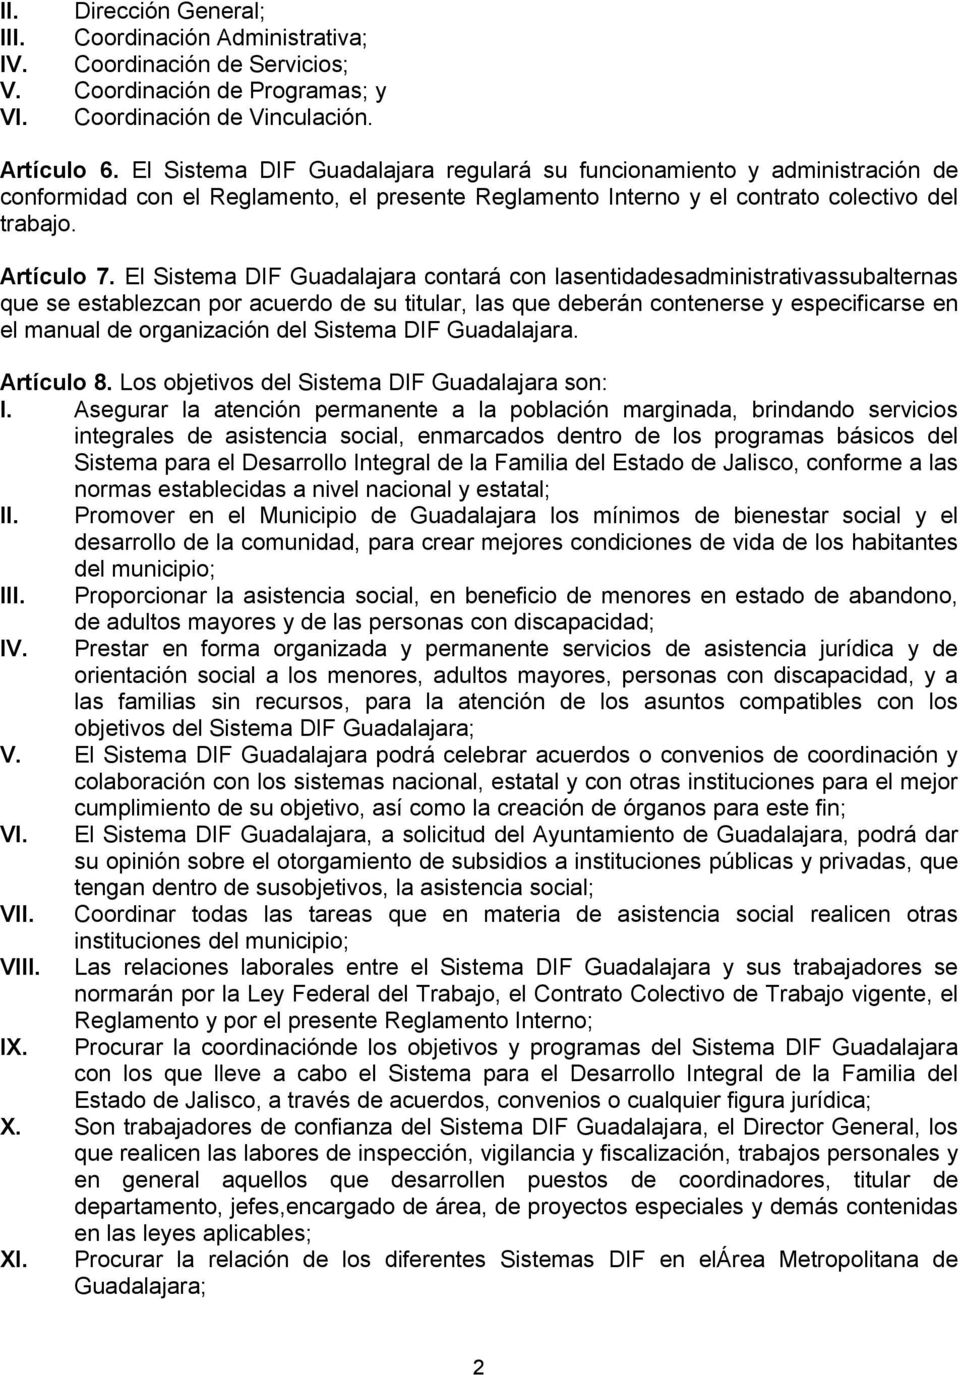 El Sistema DIF Guadalajara contará con lasentidadesadministrativassubalternas que se establezcan por acuerdo de su titular, las que deberán contenerse y especificarse en el manual de organización del